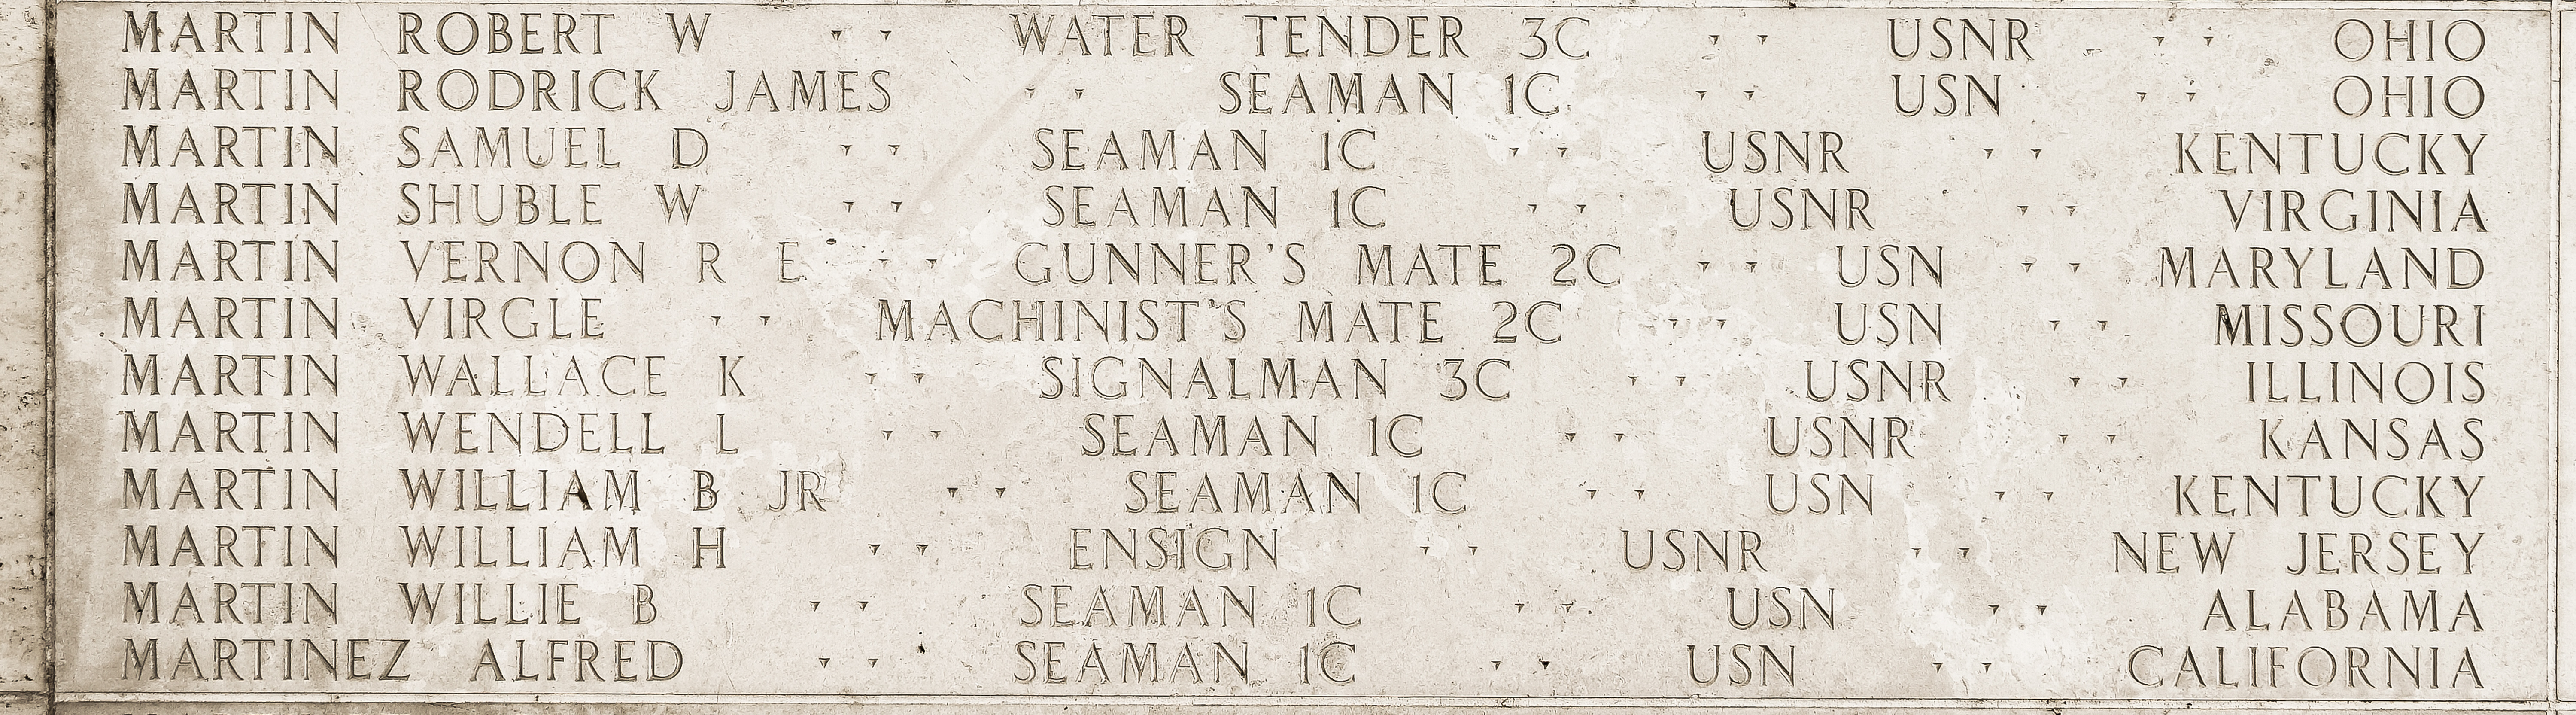 Rodrick James Martin, Seaman First Class